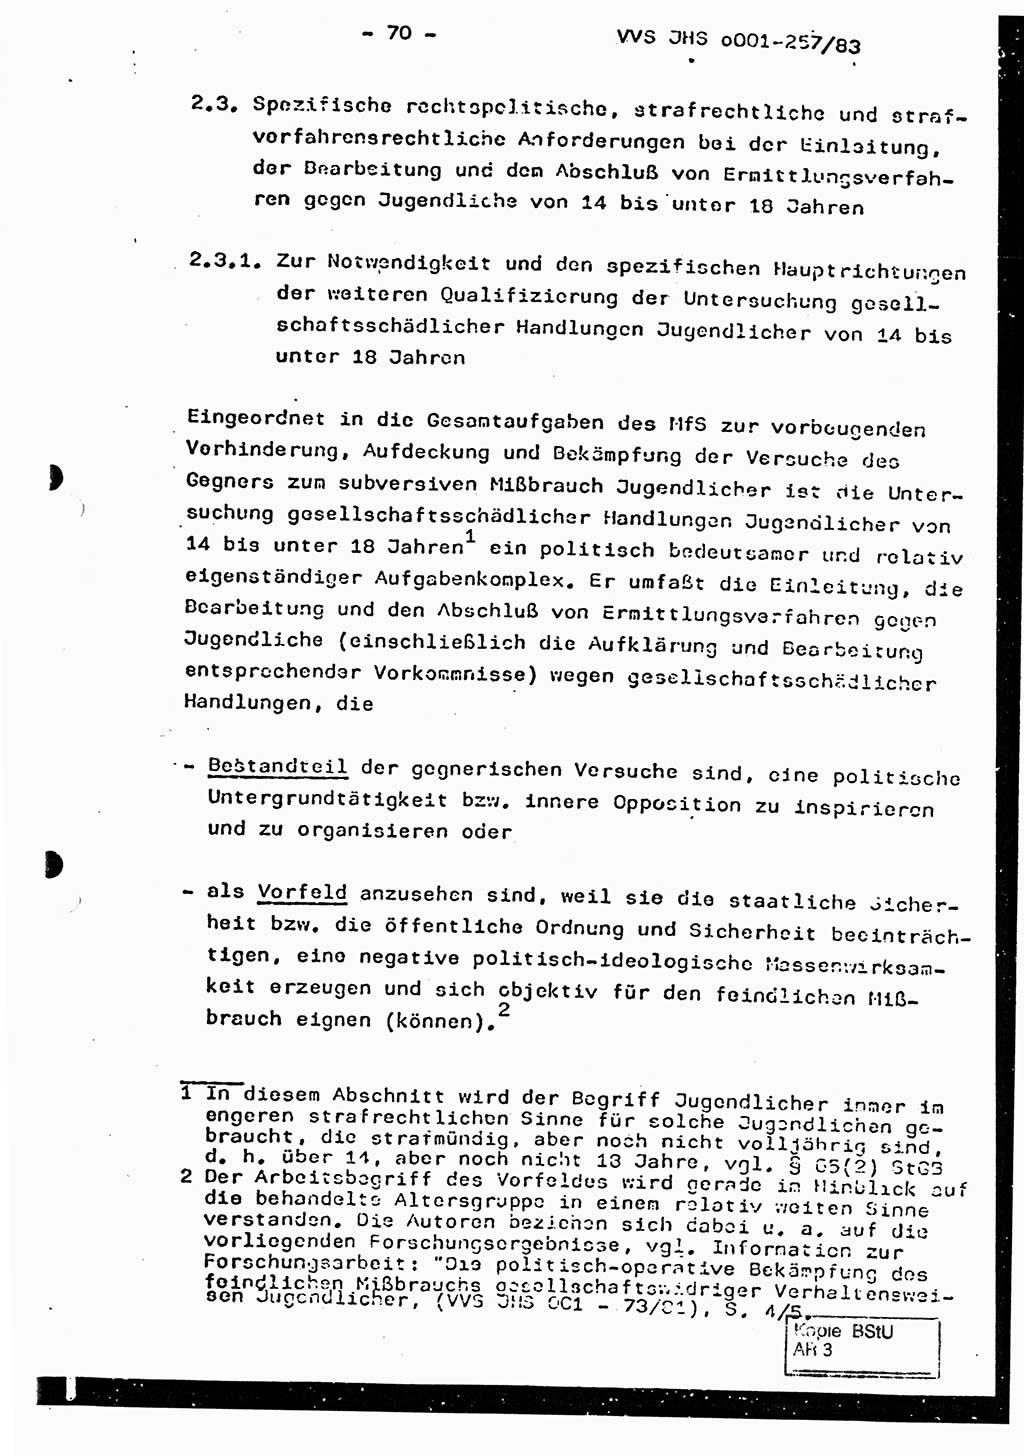 Dissertation, Oberst Helmut Lubas (BV Mdg.), Oberstleutnant Manfred Eschberger (HA IX), Oberleutnant Hans-Jürgen Ludwig (JHS), Ministerium für Staatssicherheit (MfS) [Deutsche Demokratische Republik (DDR)], Juristische Hochschule (JHS), Vertrauliche Verschlußsache (VVS) o001-257/83, Potsdam 1983, Seite 70 (Diss. MfS DDR JHS VVS o001-257/83 1983, S. 70)